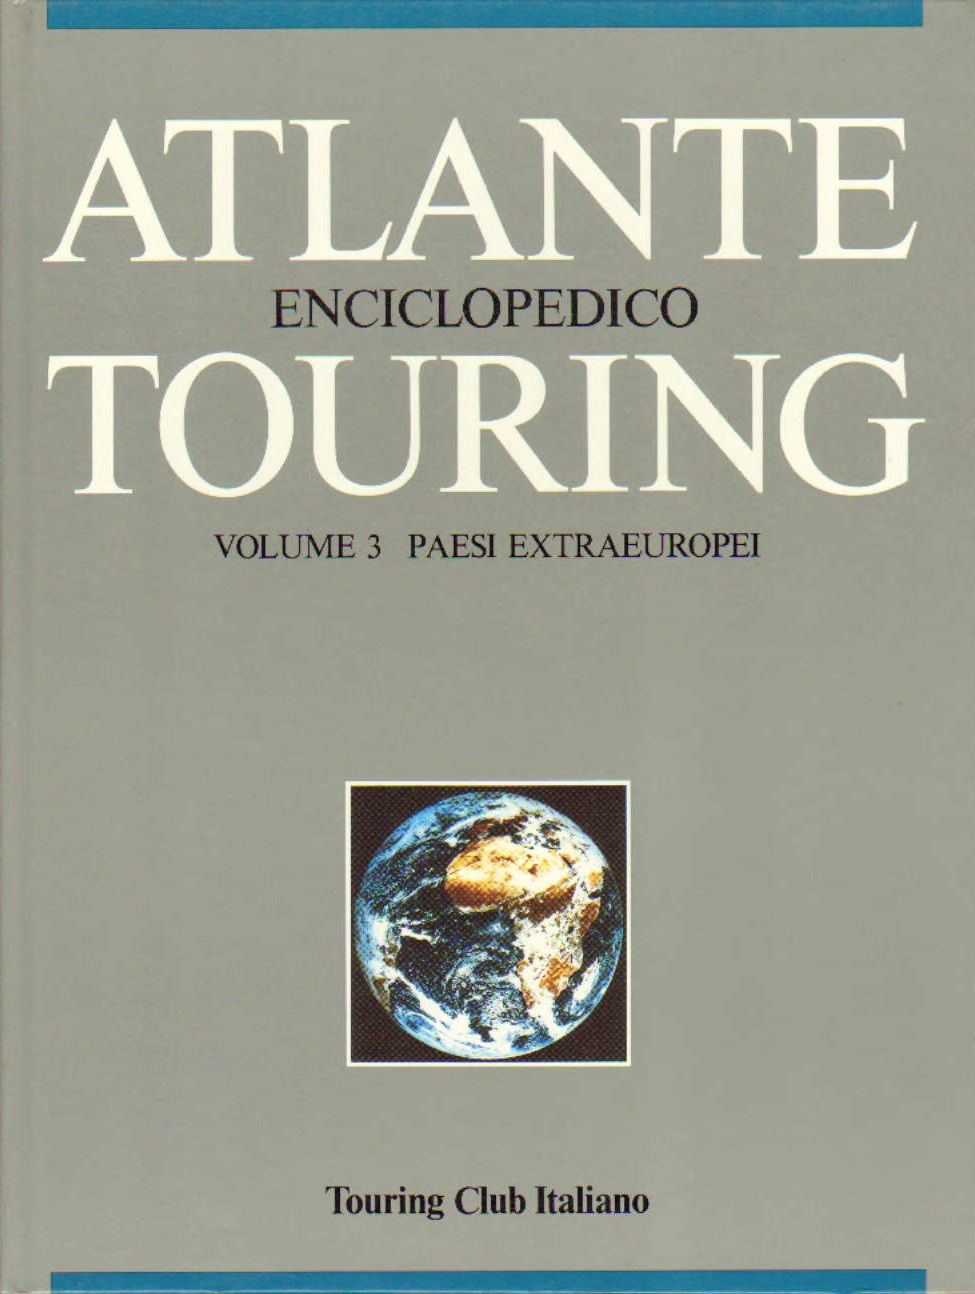 Atlante Enciclopedico Touring volume 3 Paesi Extraeuropei